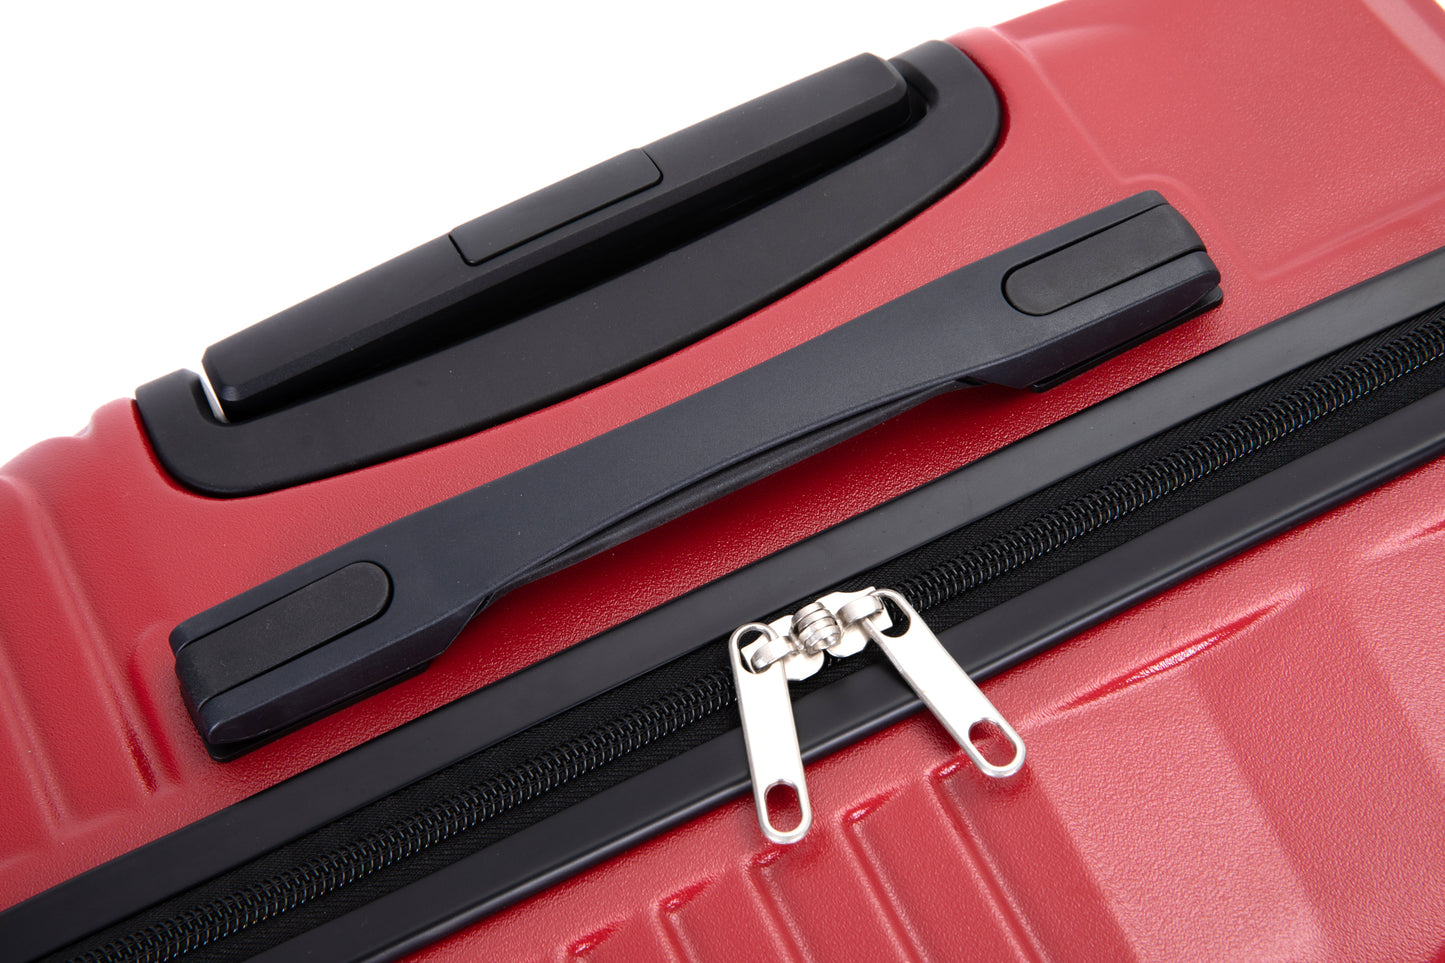 Ensembles de bagages 3 pièces PC + ABS valise légère avec deux crochets roues pivotantes (20/24/28) rouge